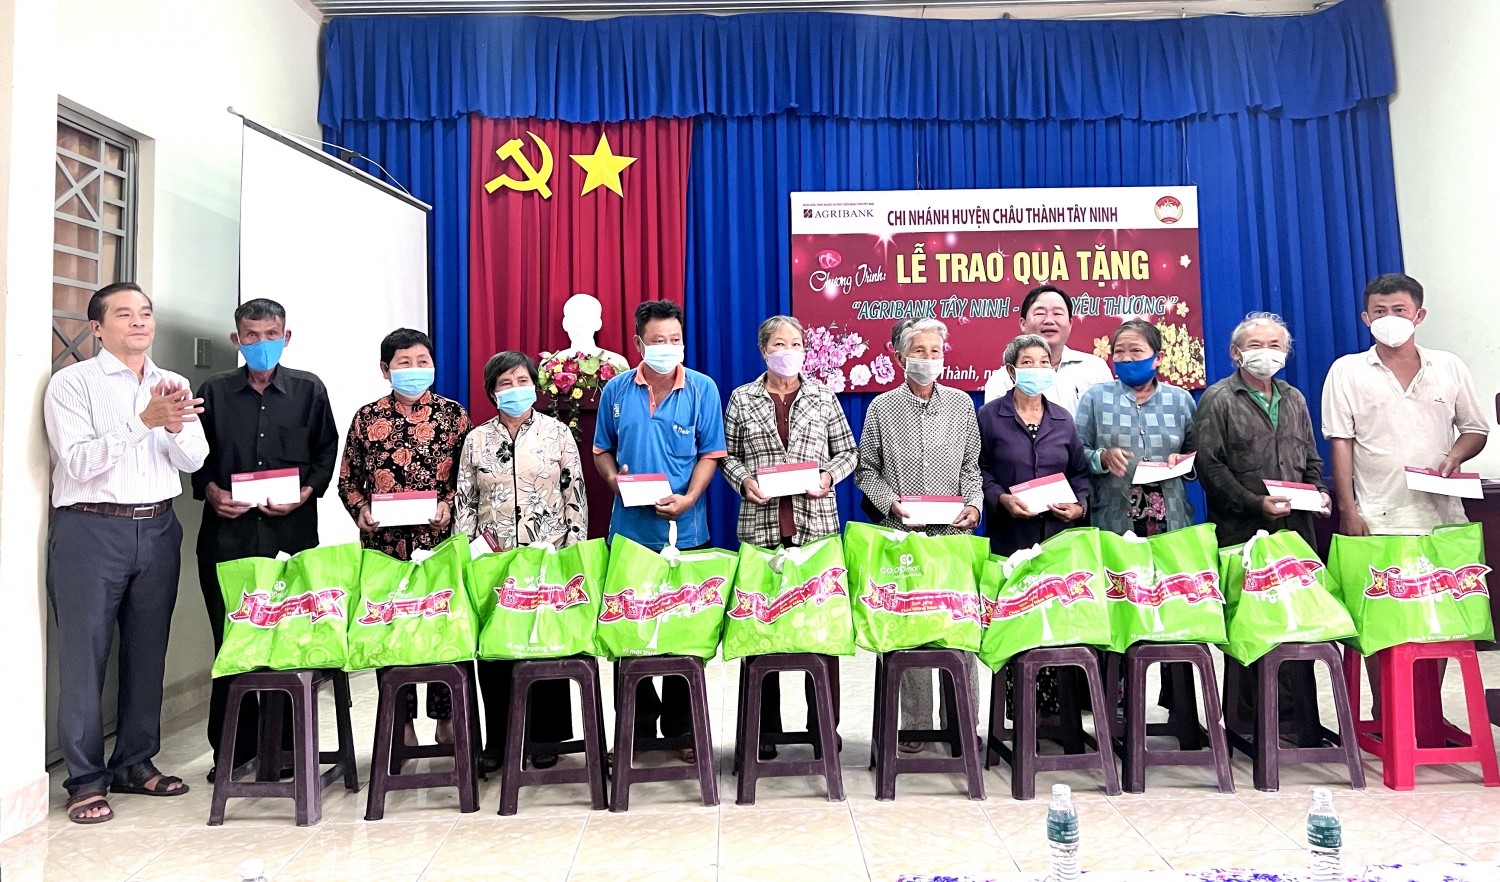 Agribank chi nhánh huyện Châu Thành, Tây Ninh: Trao tặng 75 phần quà tết cho người nghèo